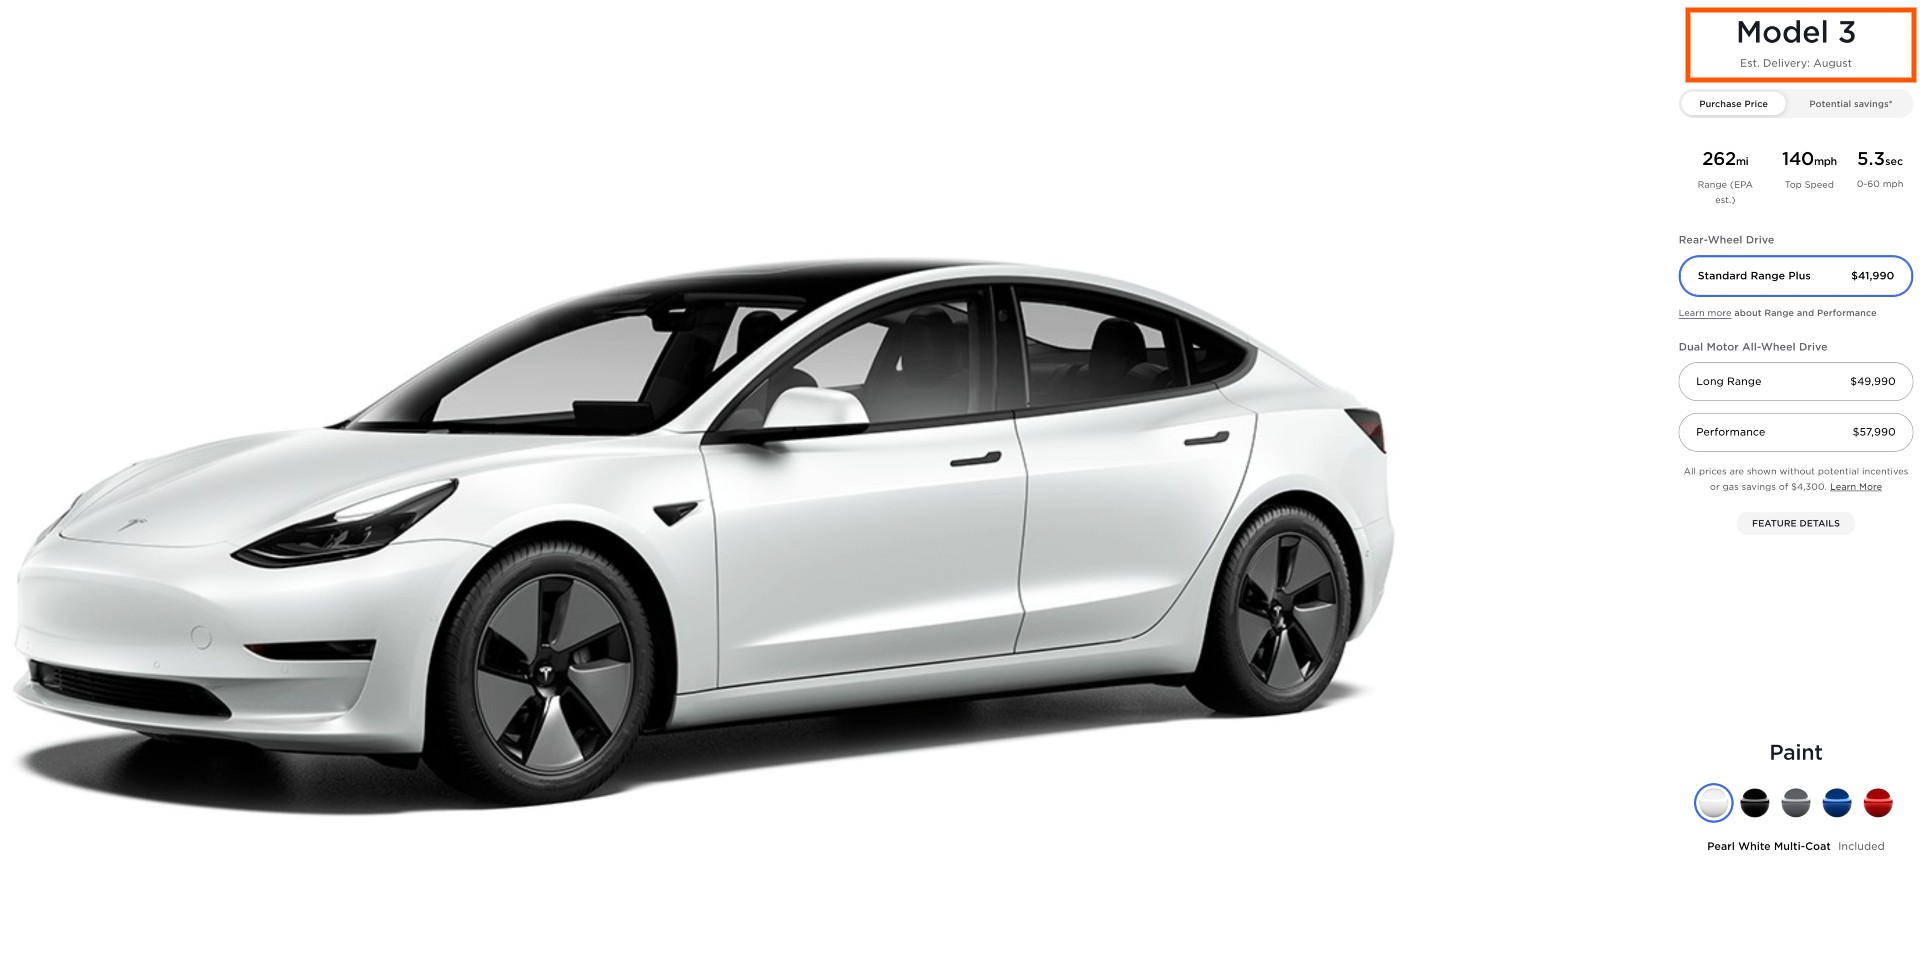 Самый базовый вариант Tesla Model 3 не будет доставлен до августа 22 года